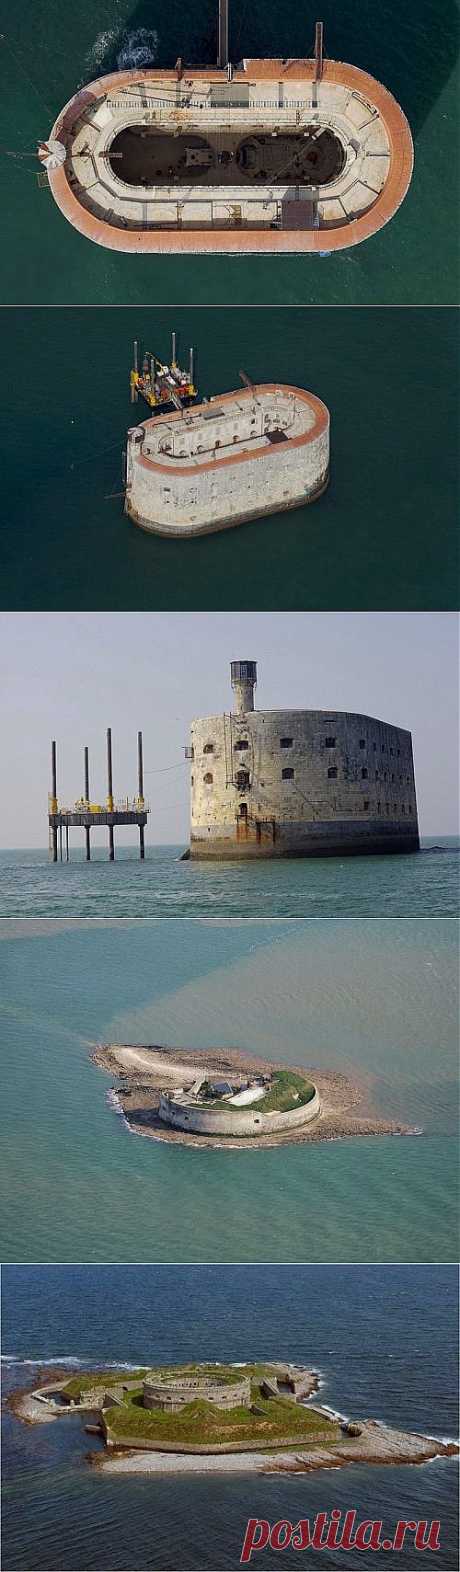 (+1) тема - 7 Потрясающих крепостей на побережье Франции | Занимательный журнал